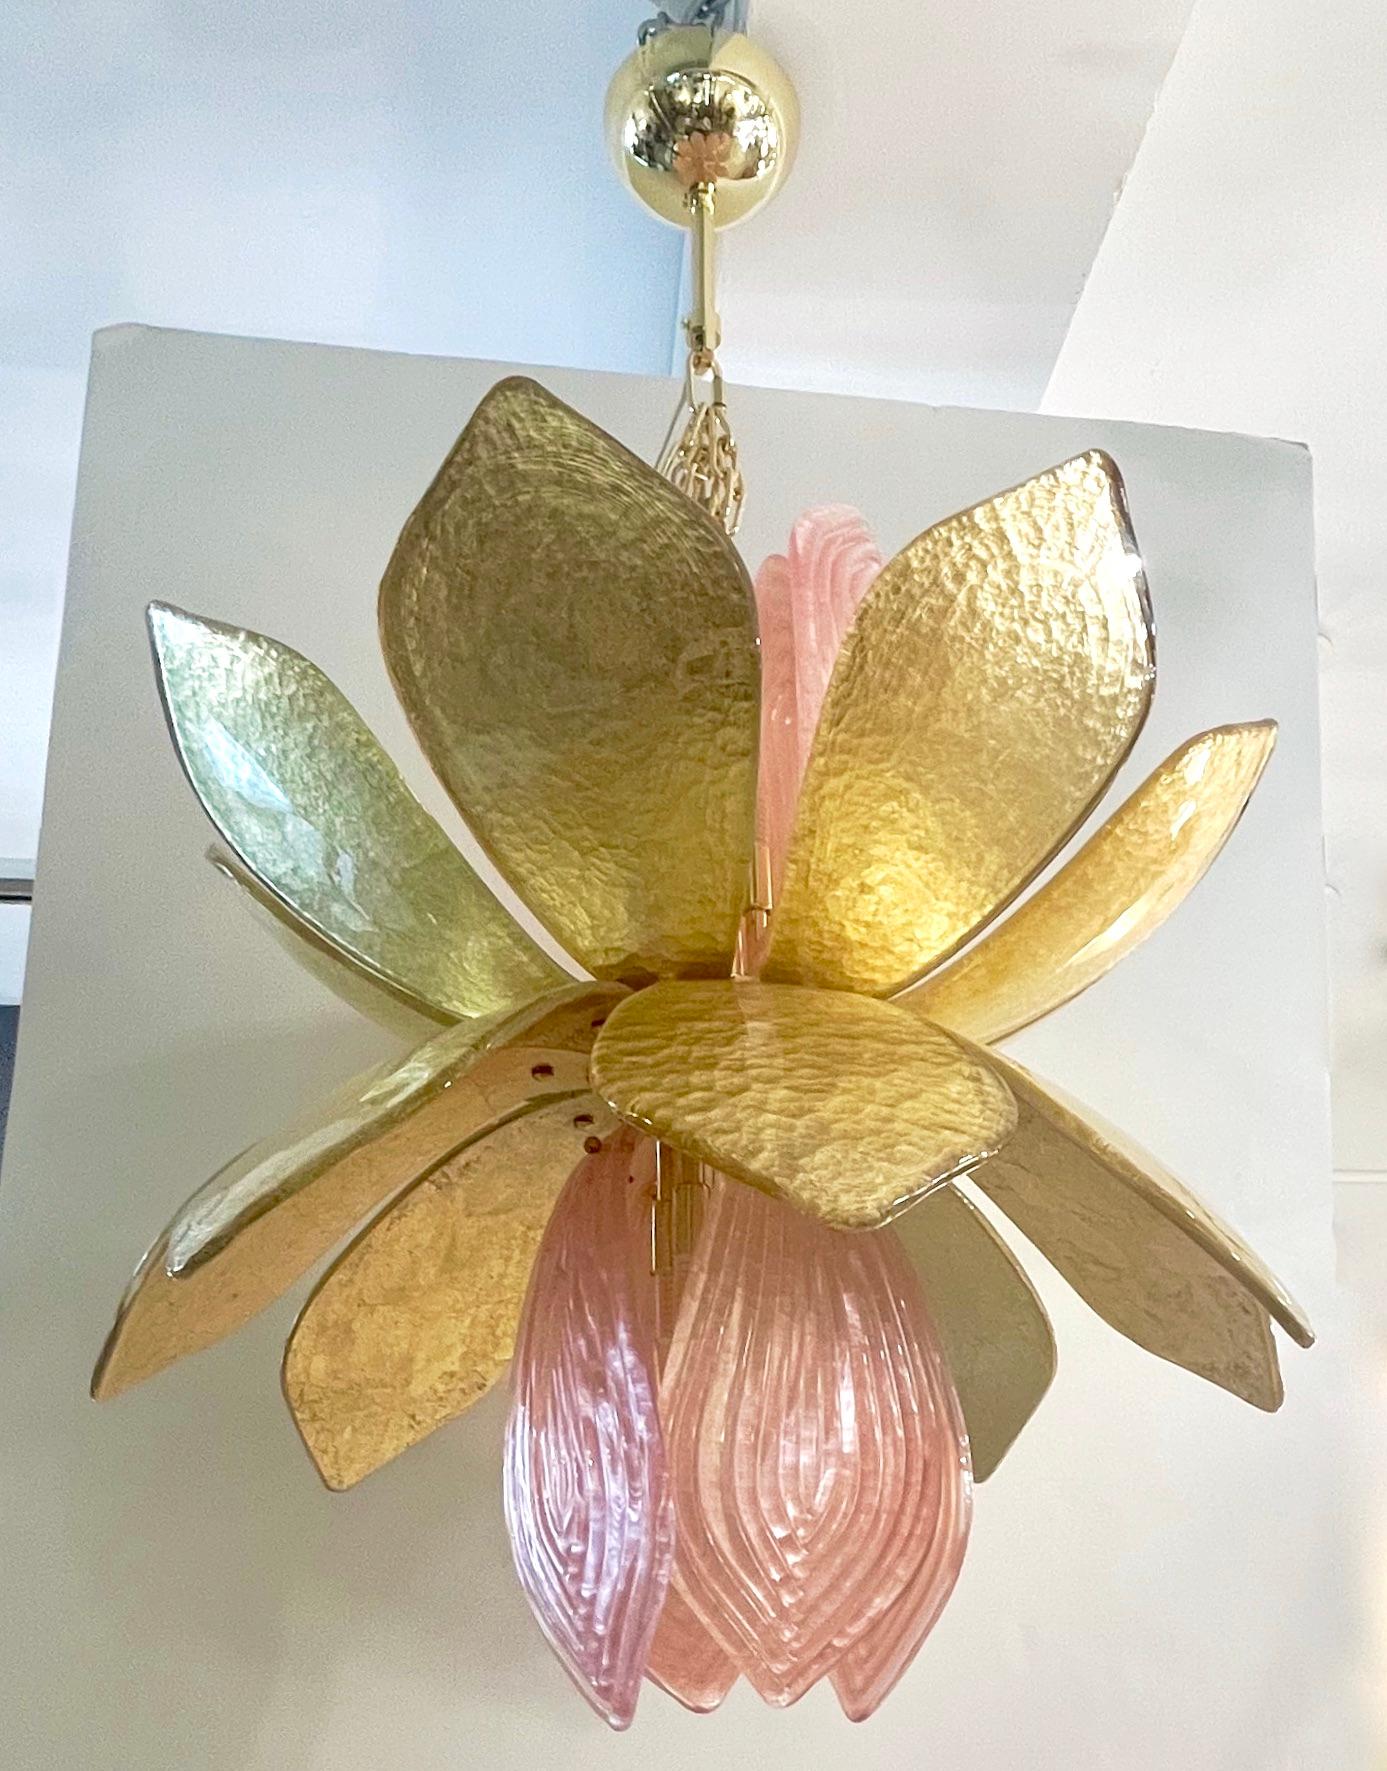 Mettez des fleurs dans votre maison ! Il s'agit d'un design organique exclusif, entièrement réalisé à la main à Murano - Italie, en forme de fleur de lotus avec des feuilles en verre de Murano reed texturé rose givré qui sortent et descendent d'une